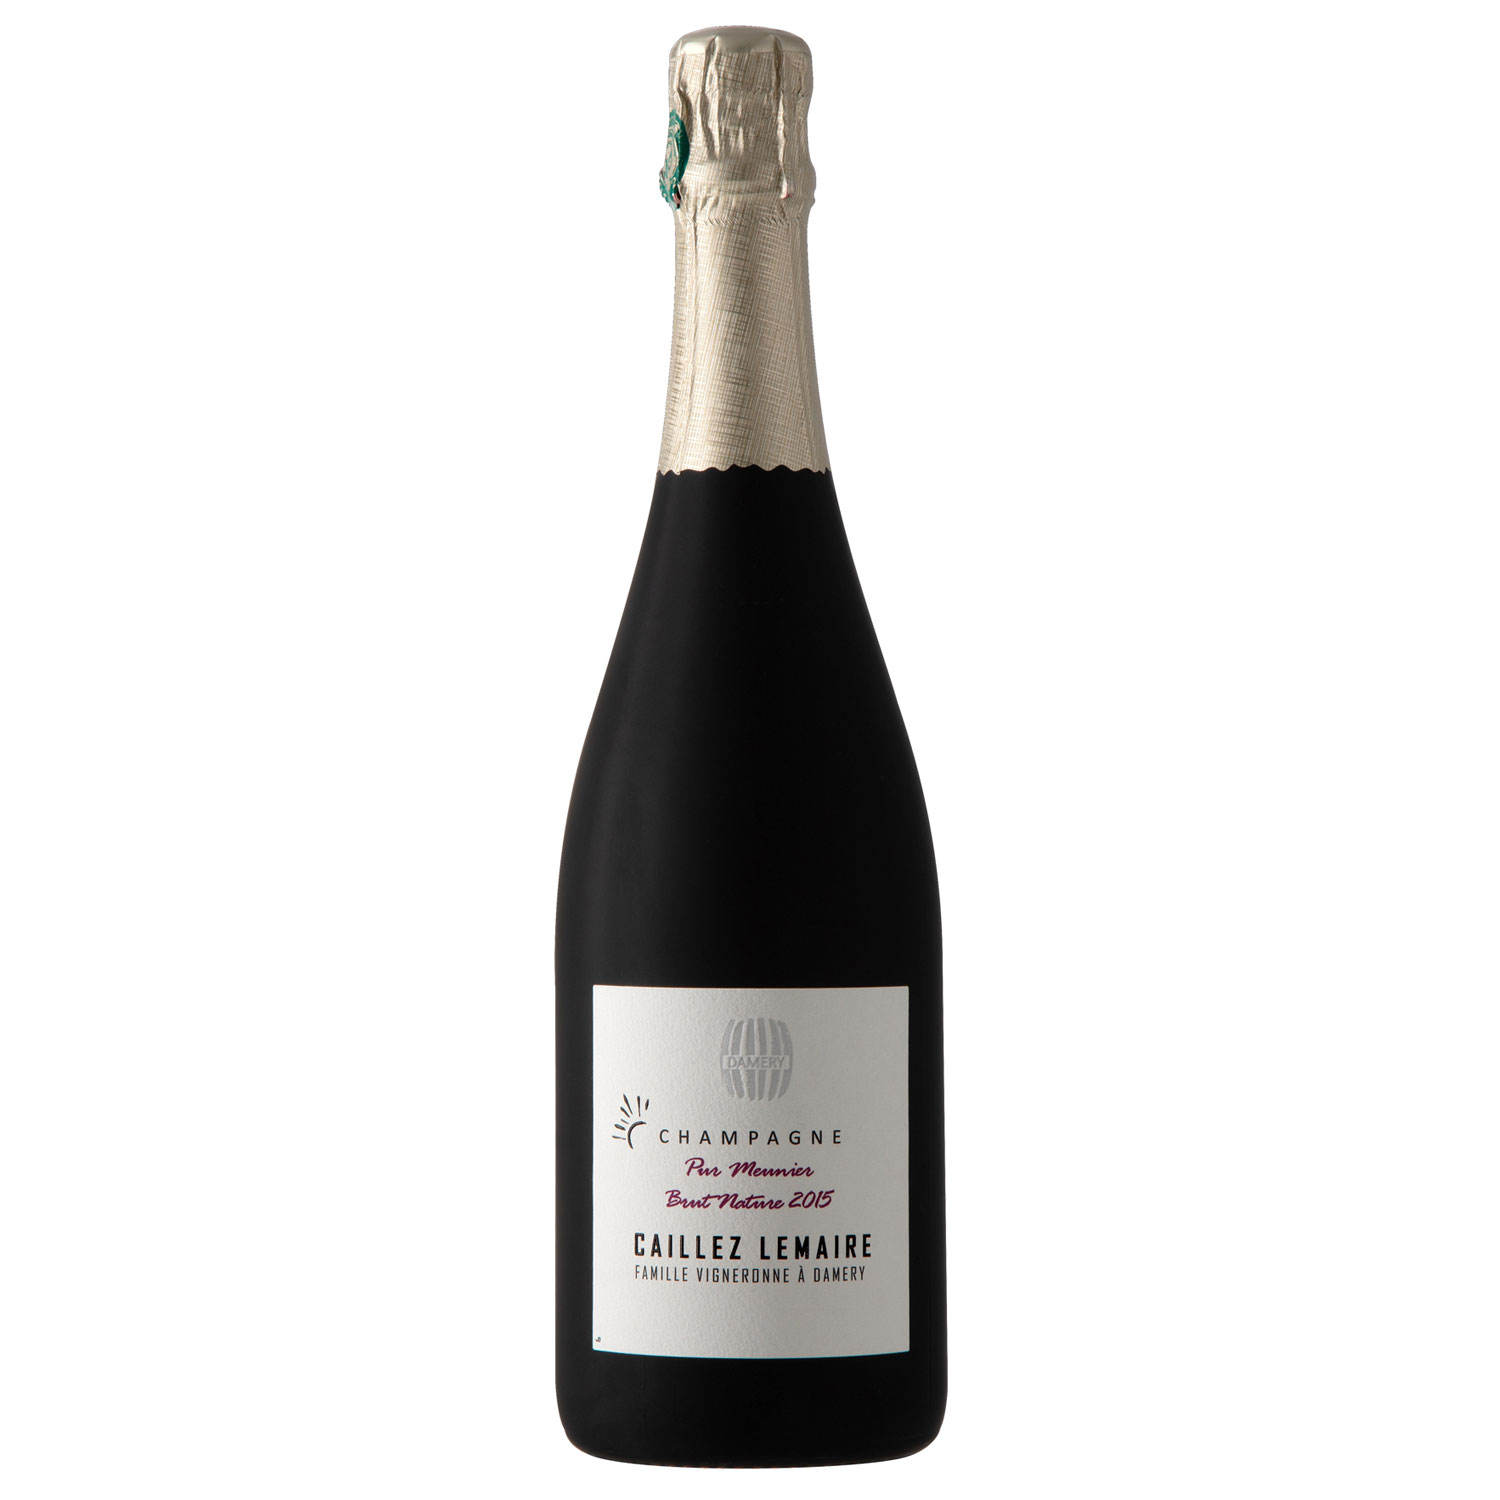 Champagne Caillez-Lemaire: Pur Meunier  - Brut Nature 2015